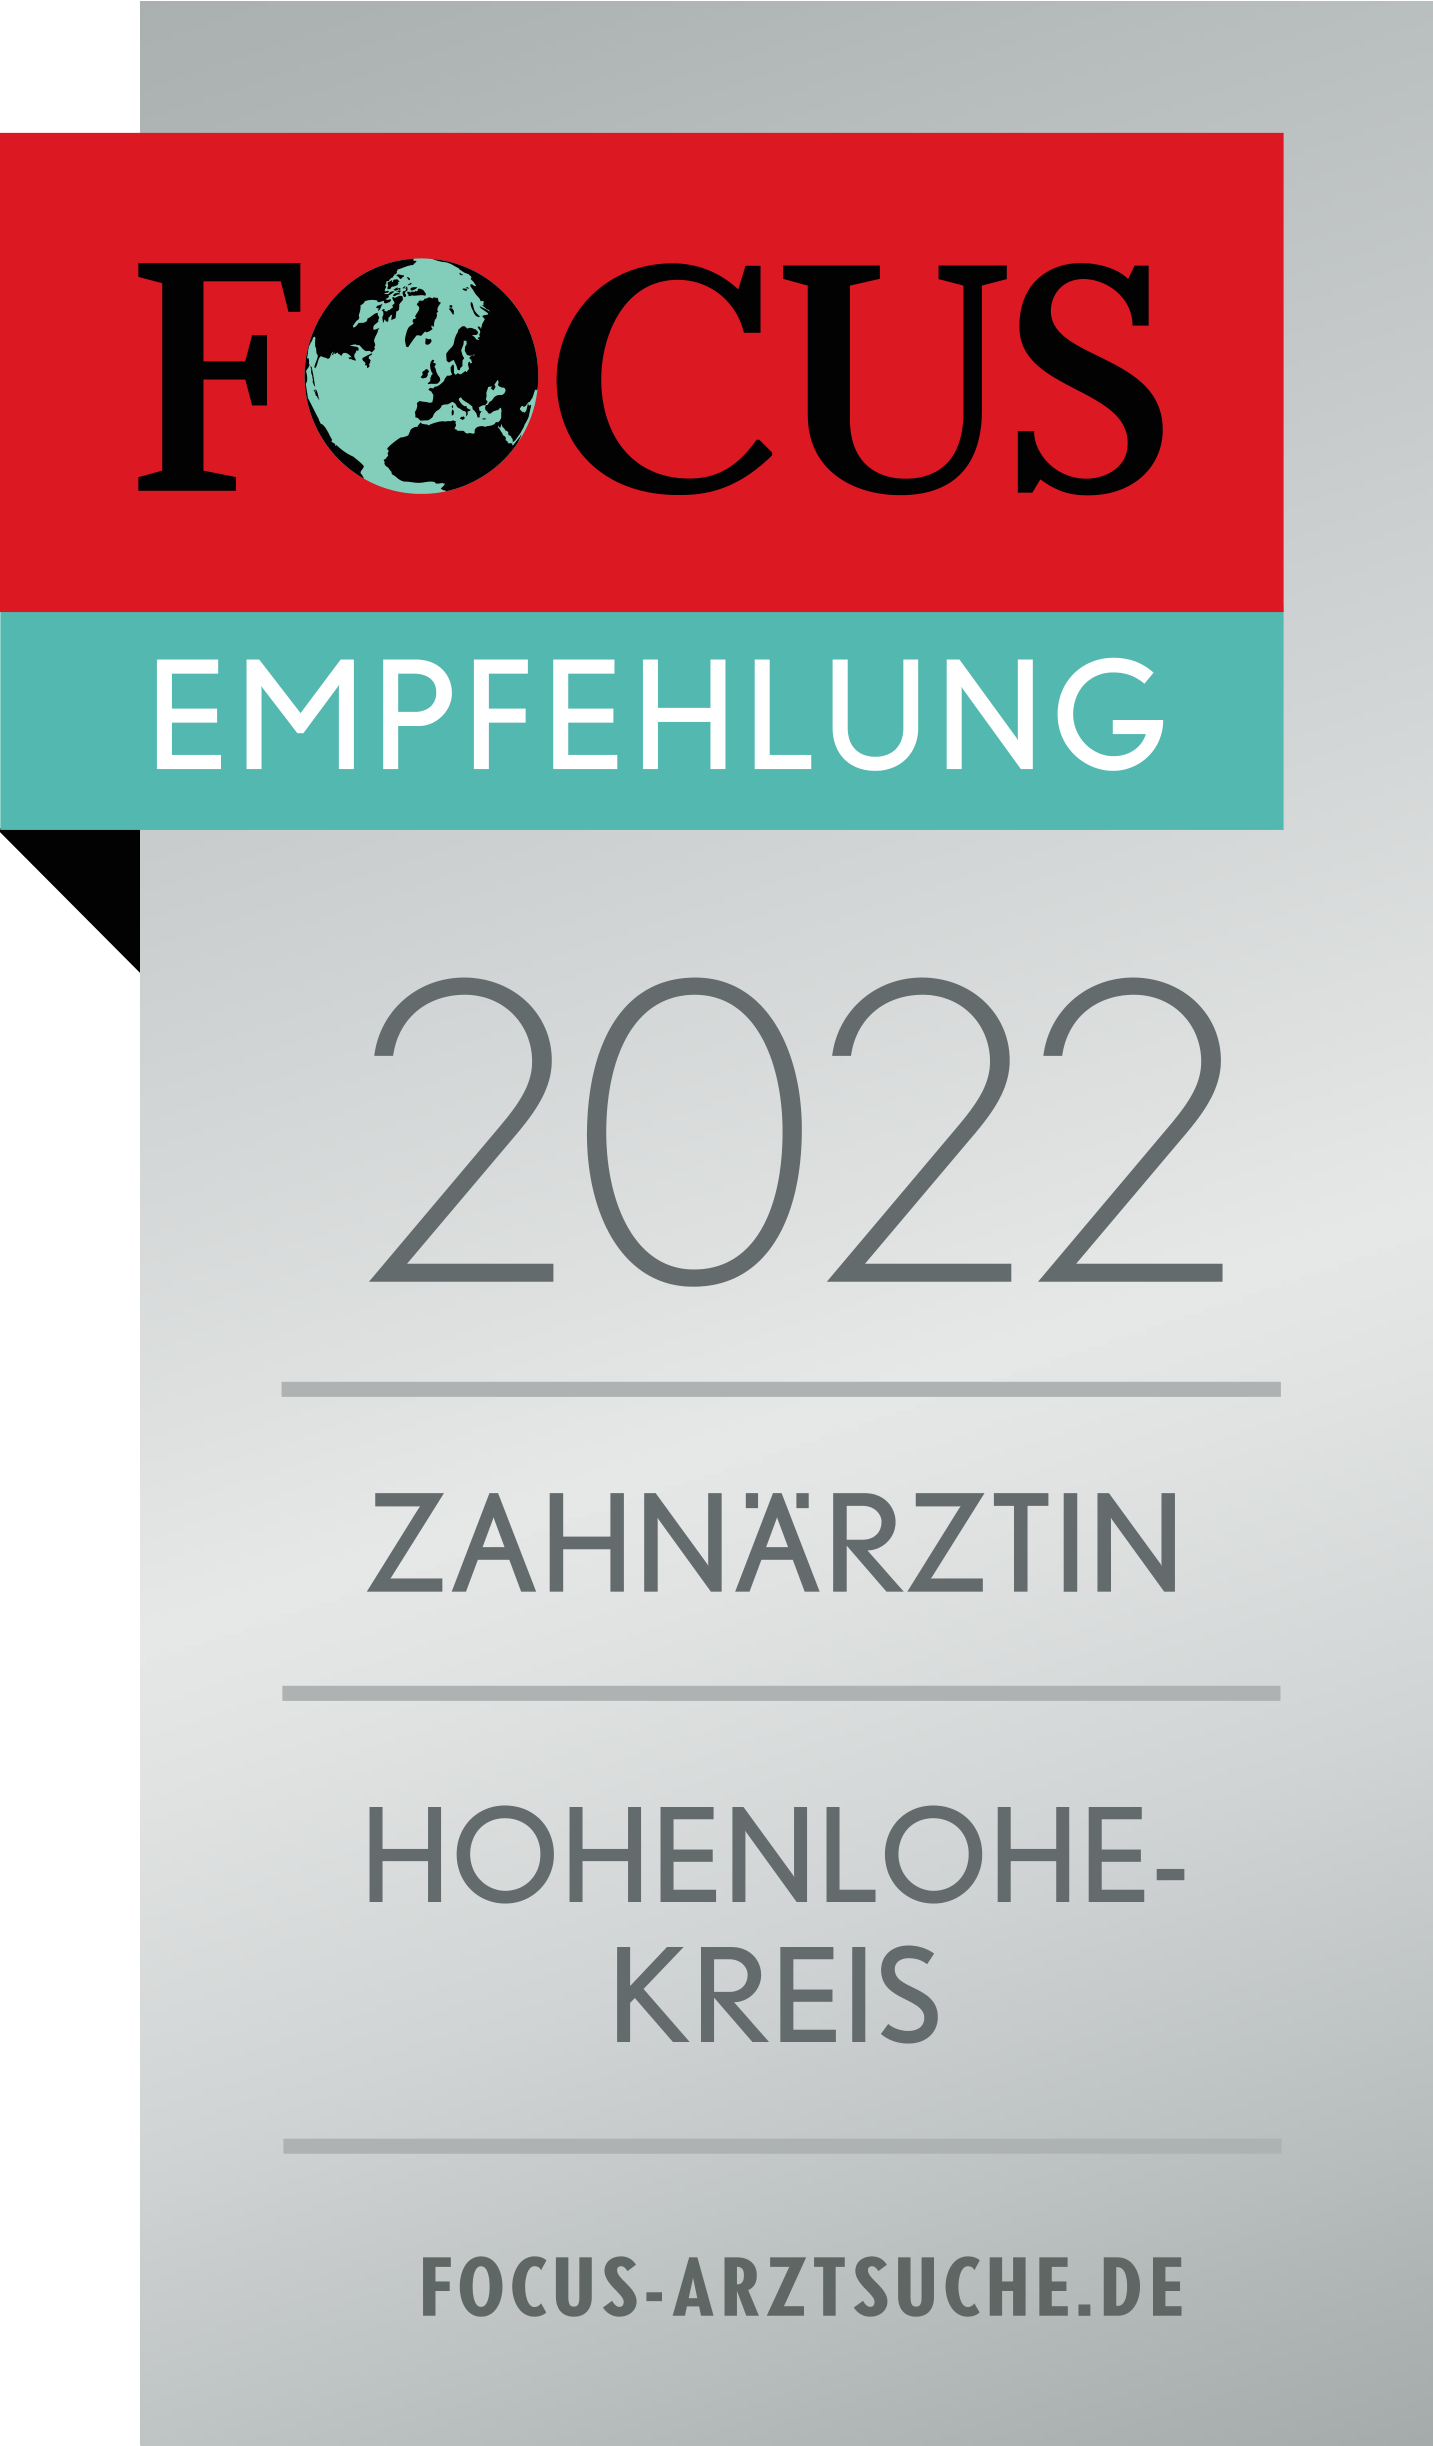 Focus Siegel 2022 Zahnärztin